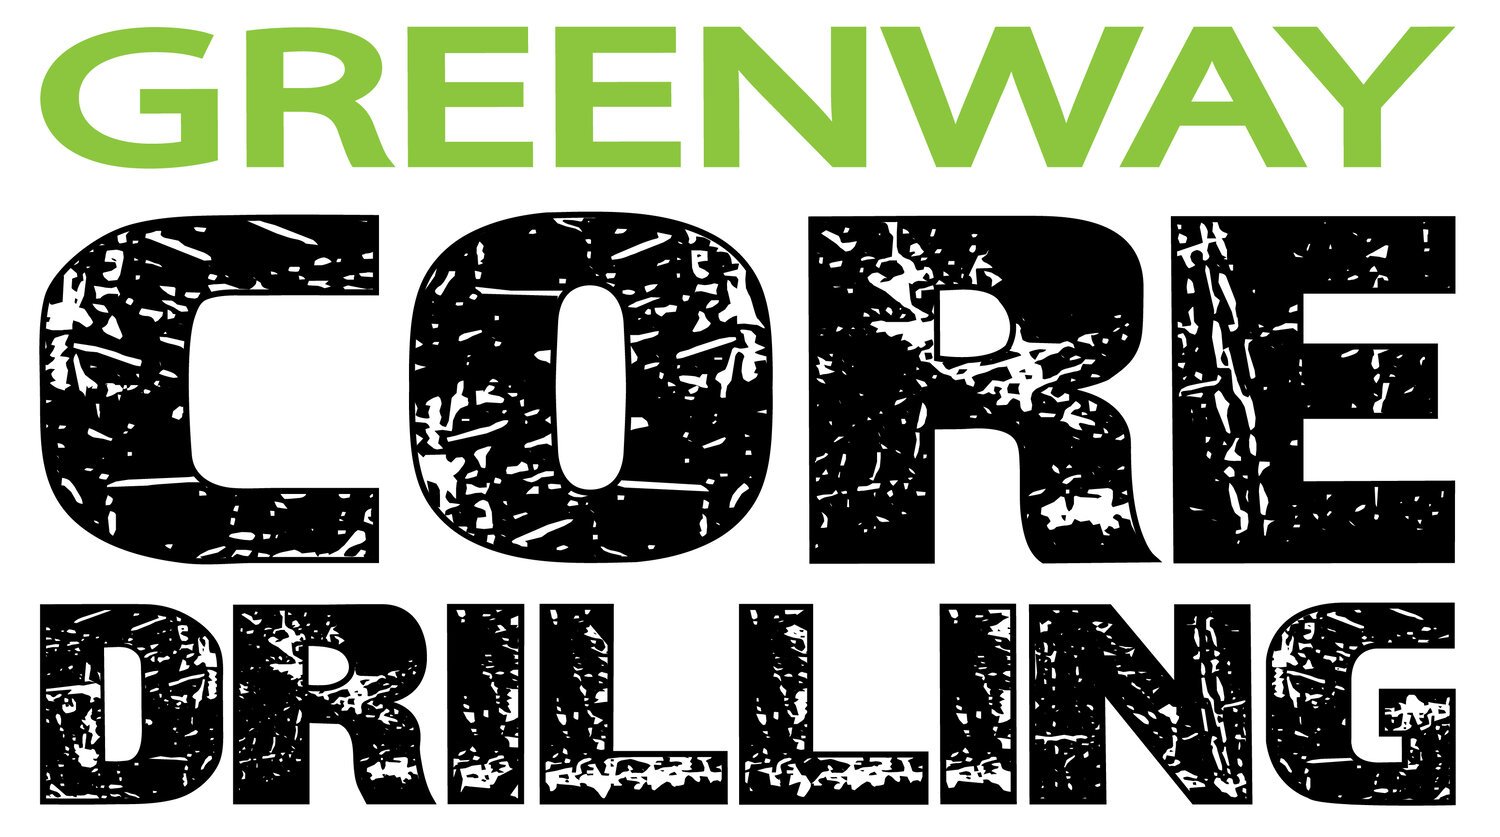 Greenway Concrete Core Drilling